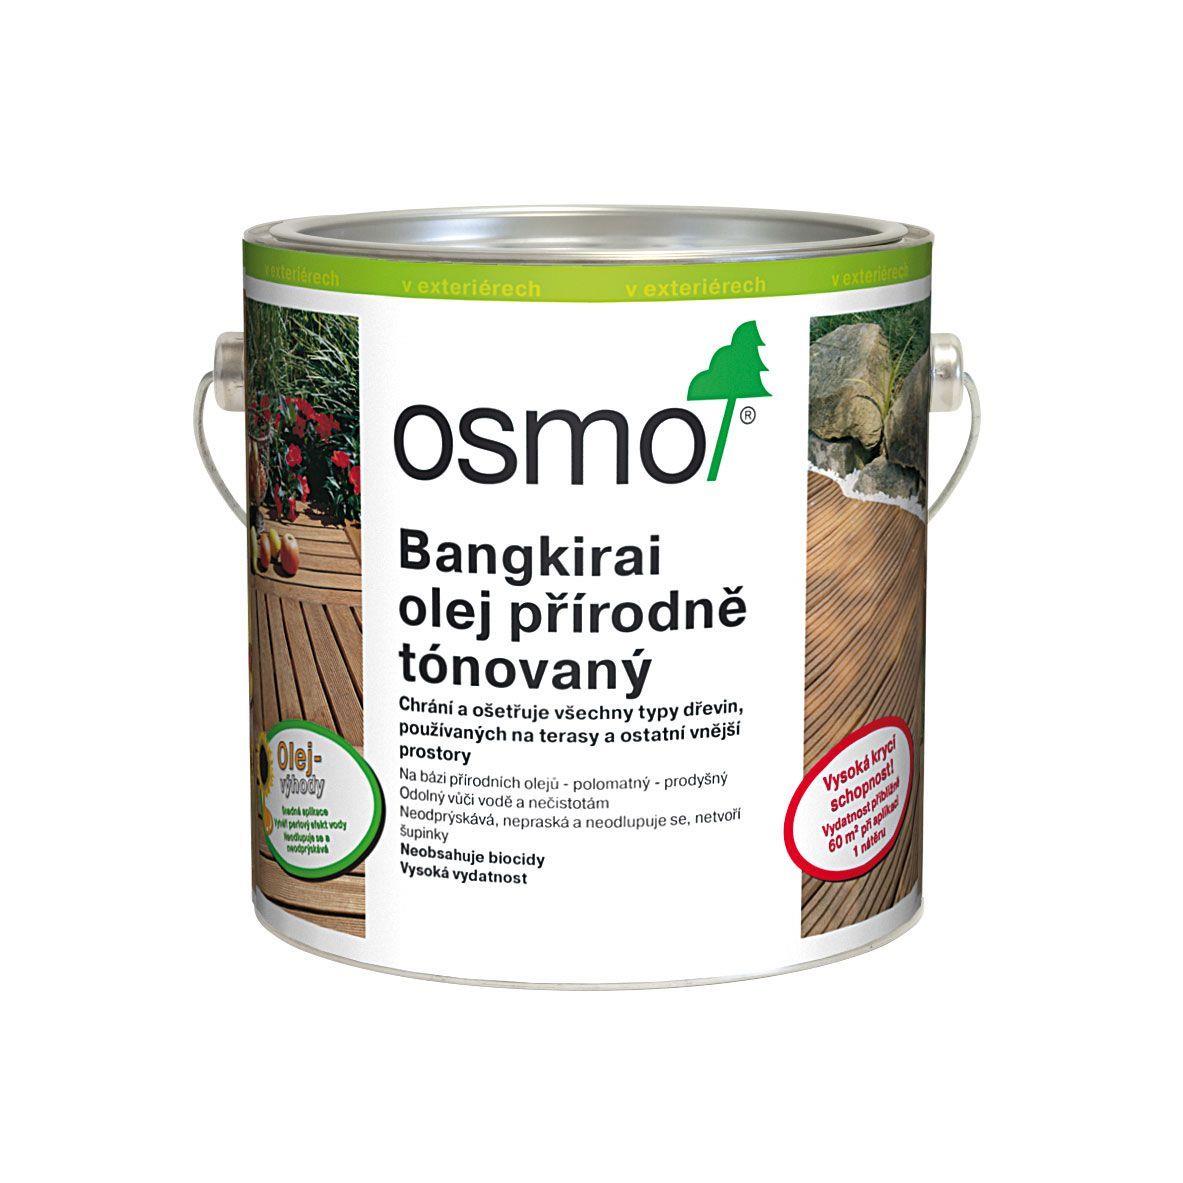 OSMO Terasový olej 006 bangkirai 3l za cenu 2,5l - přírodní